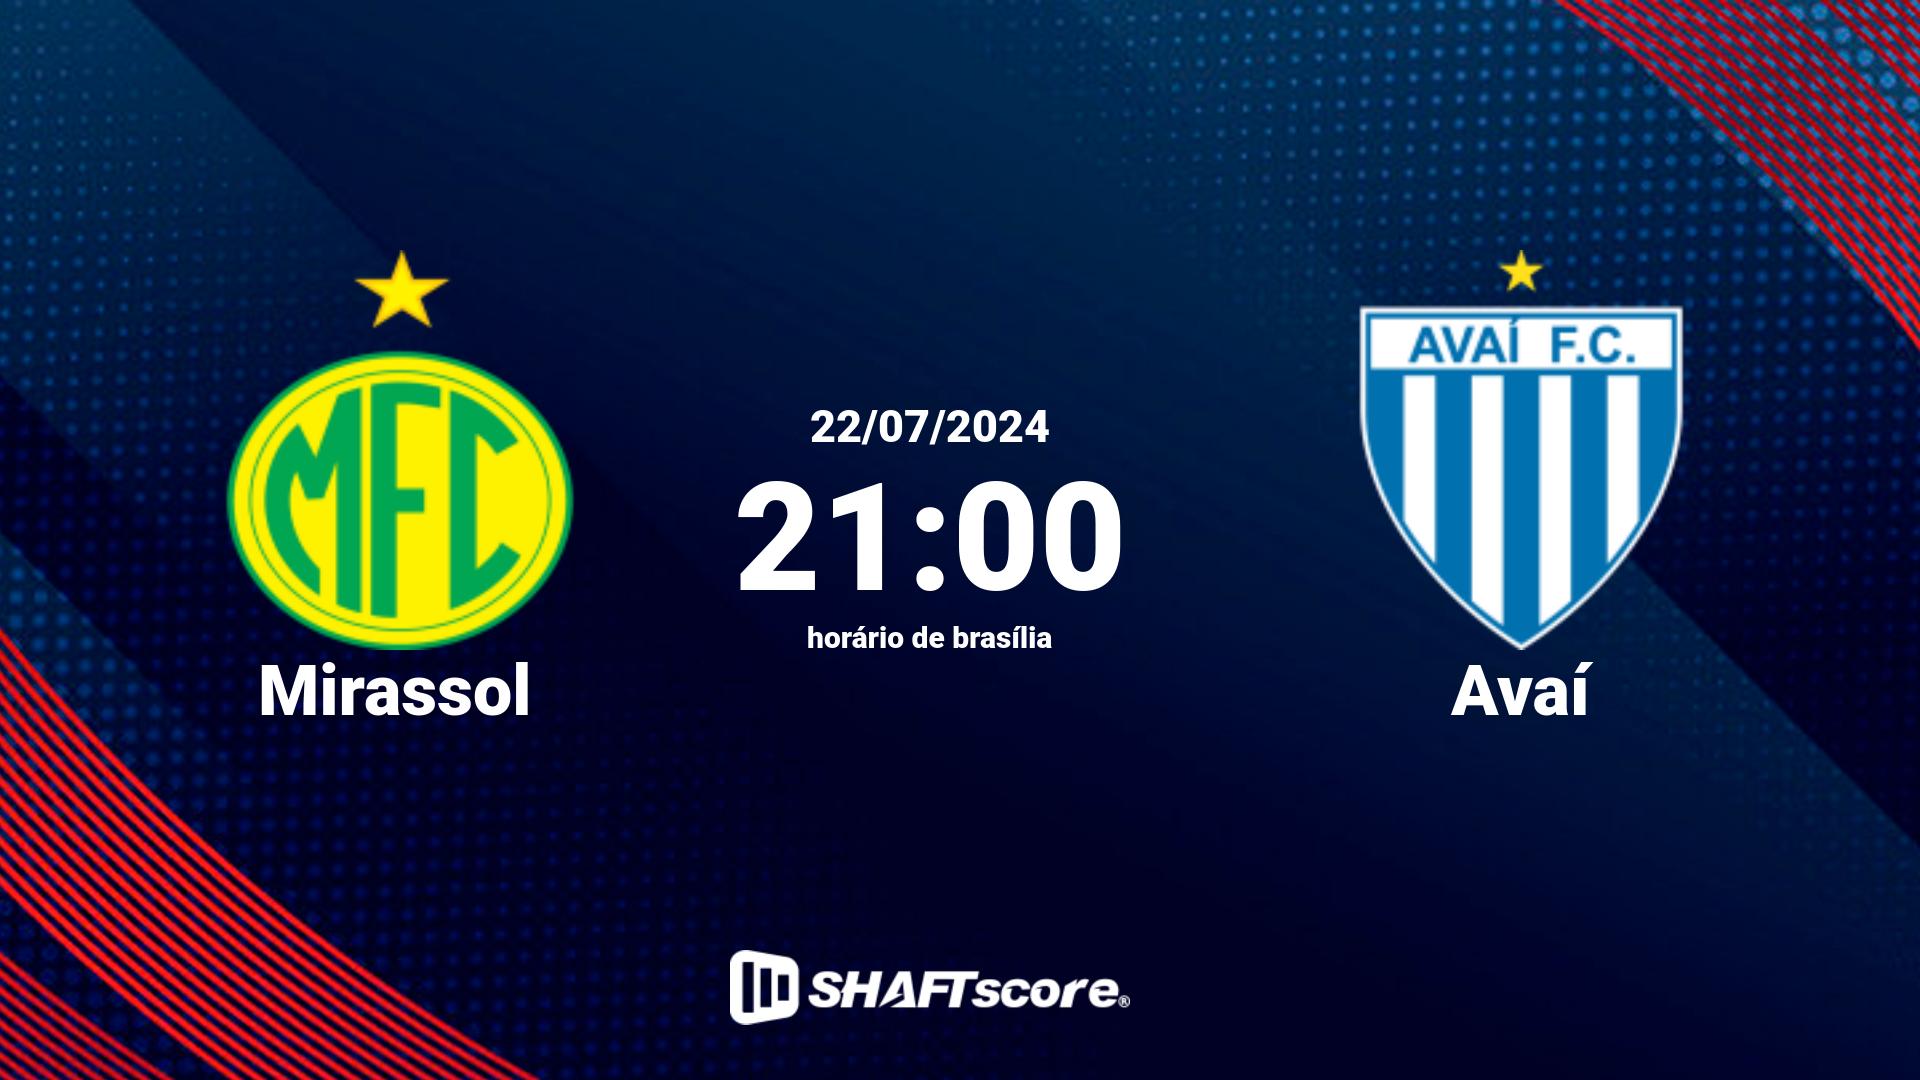 Estatísticas do jogo Mirassol vs Avaí 23.07 20:00